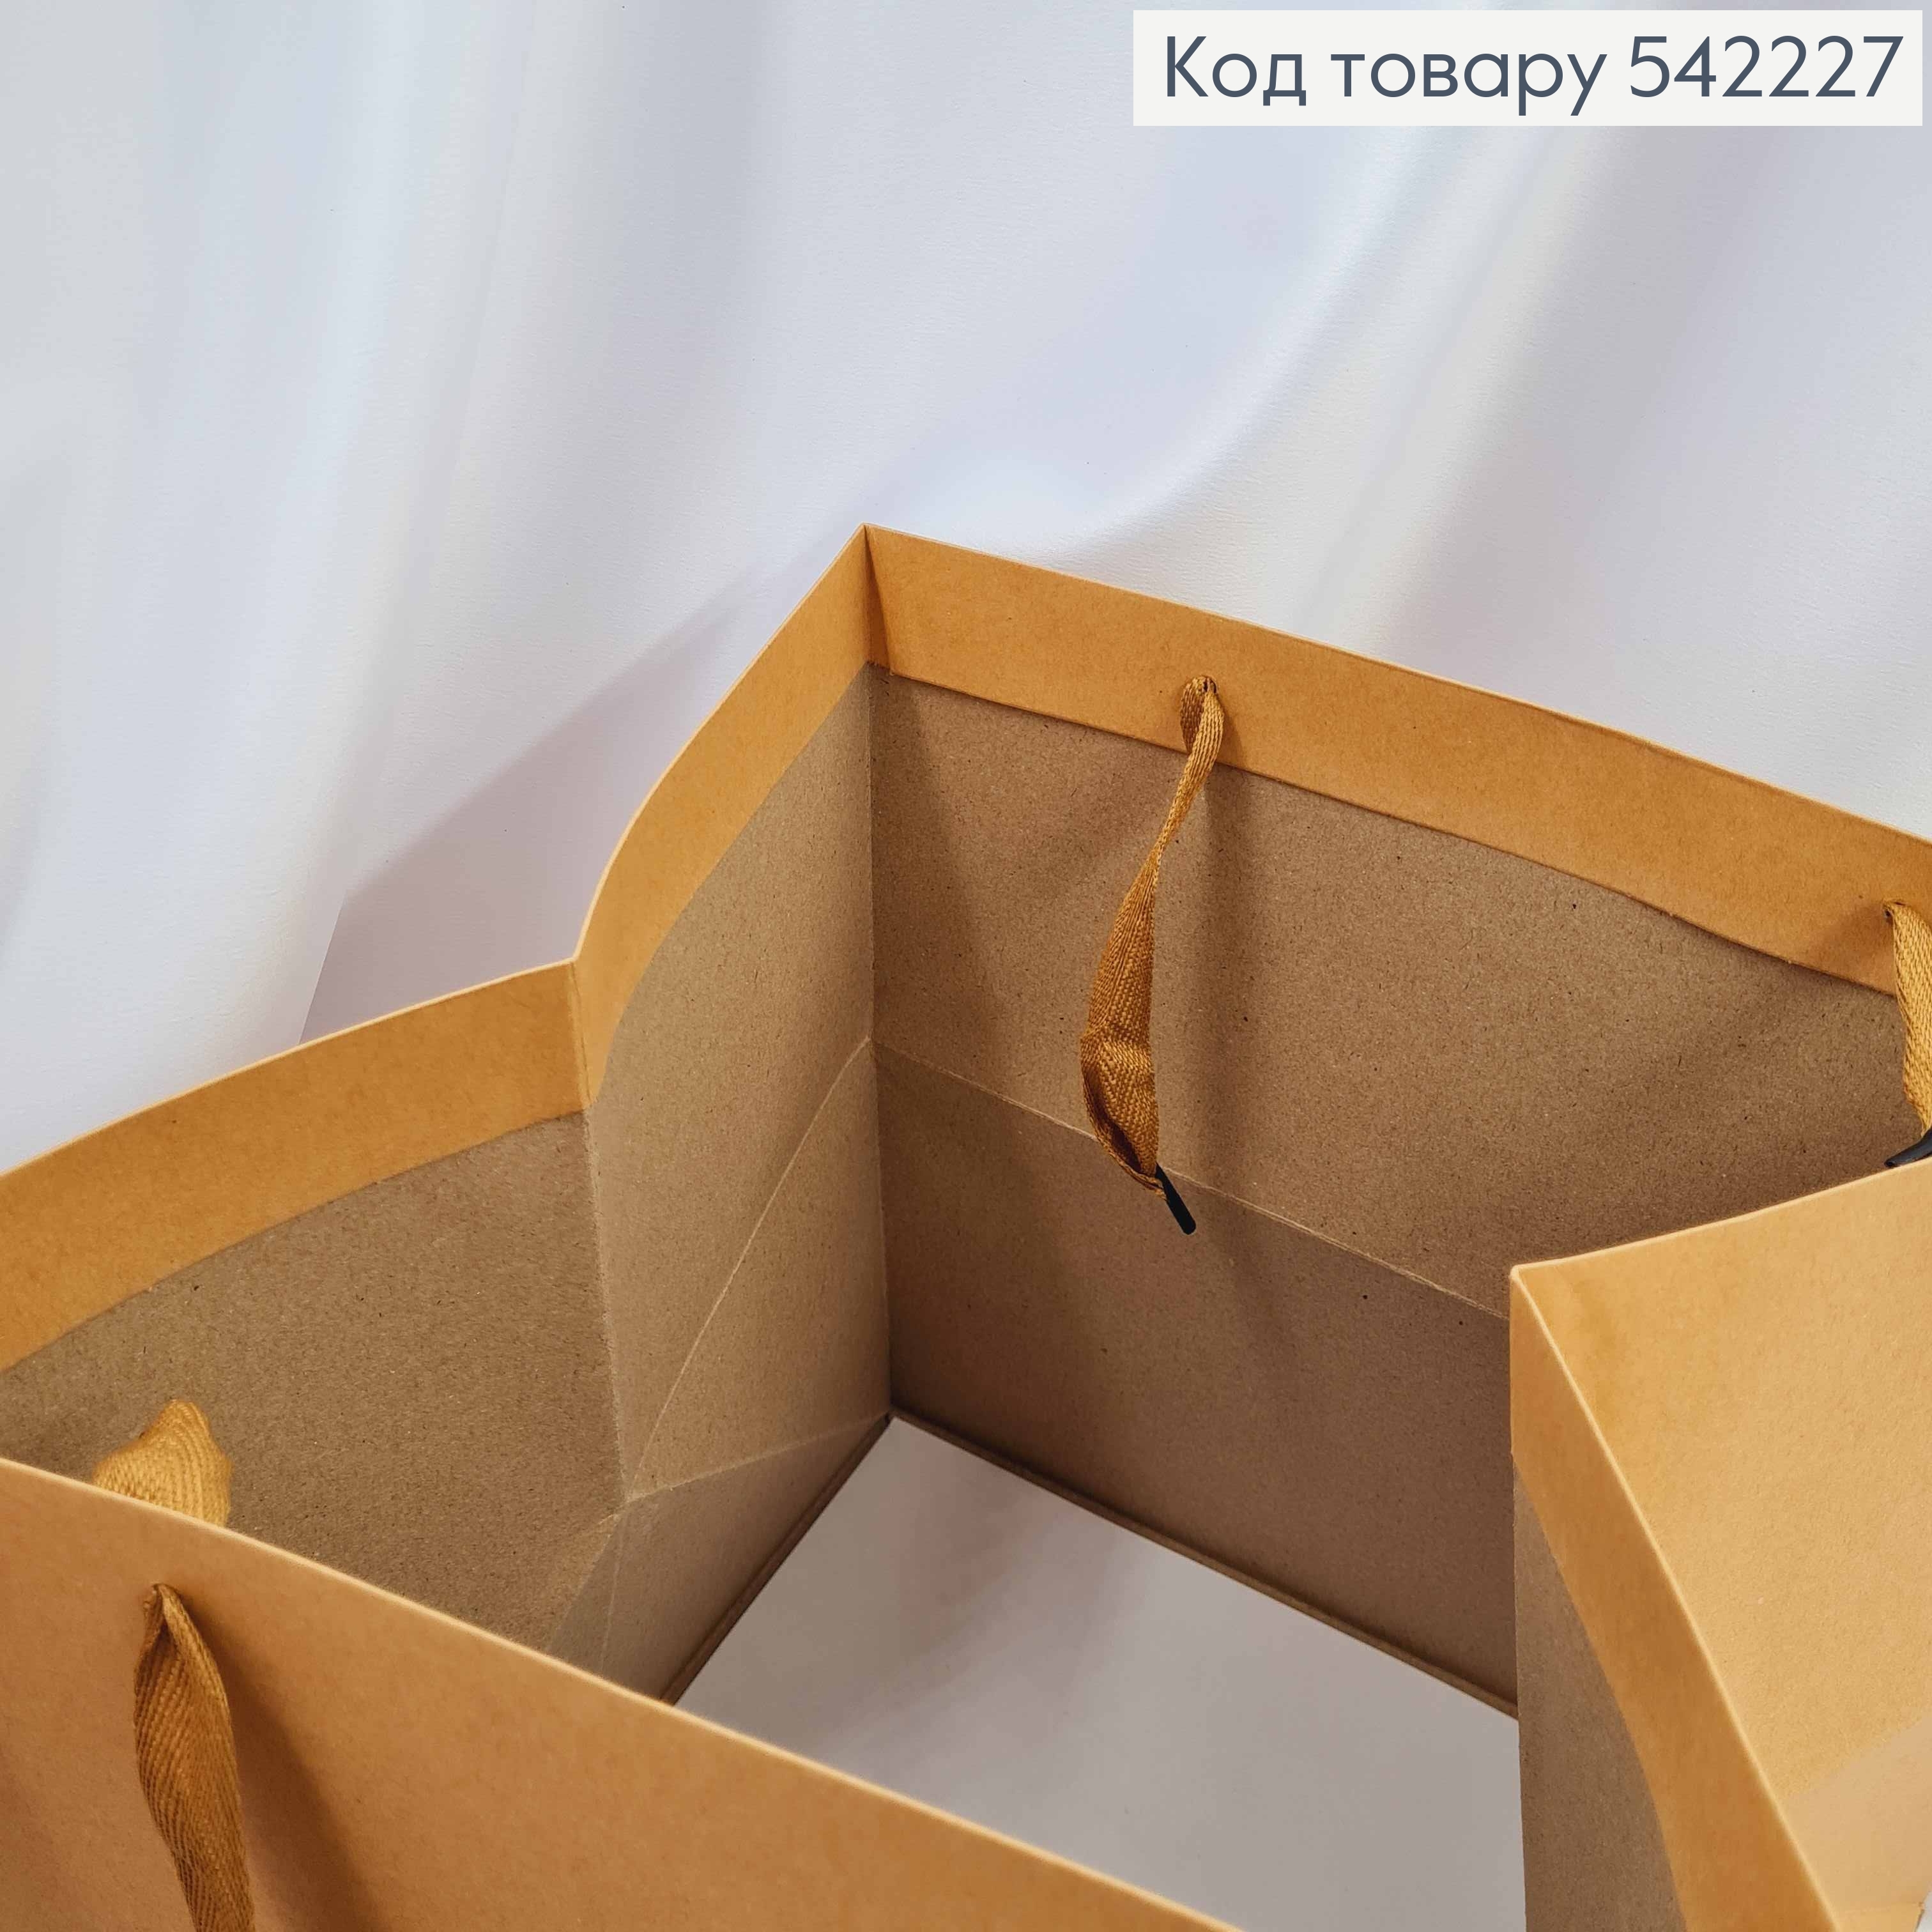 Пакет куб, качественный из твердого картона (30*30*30см) 542227 фото 2